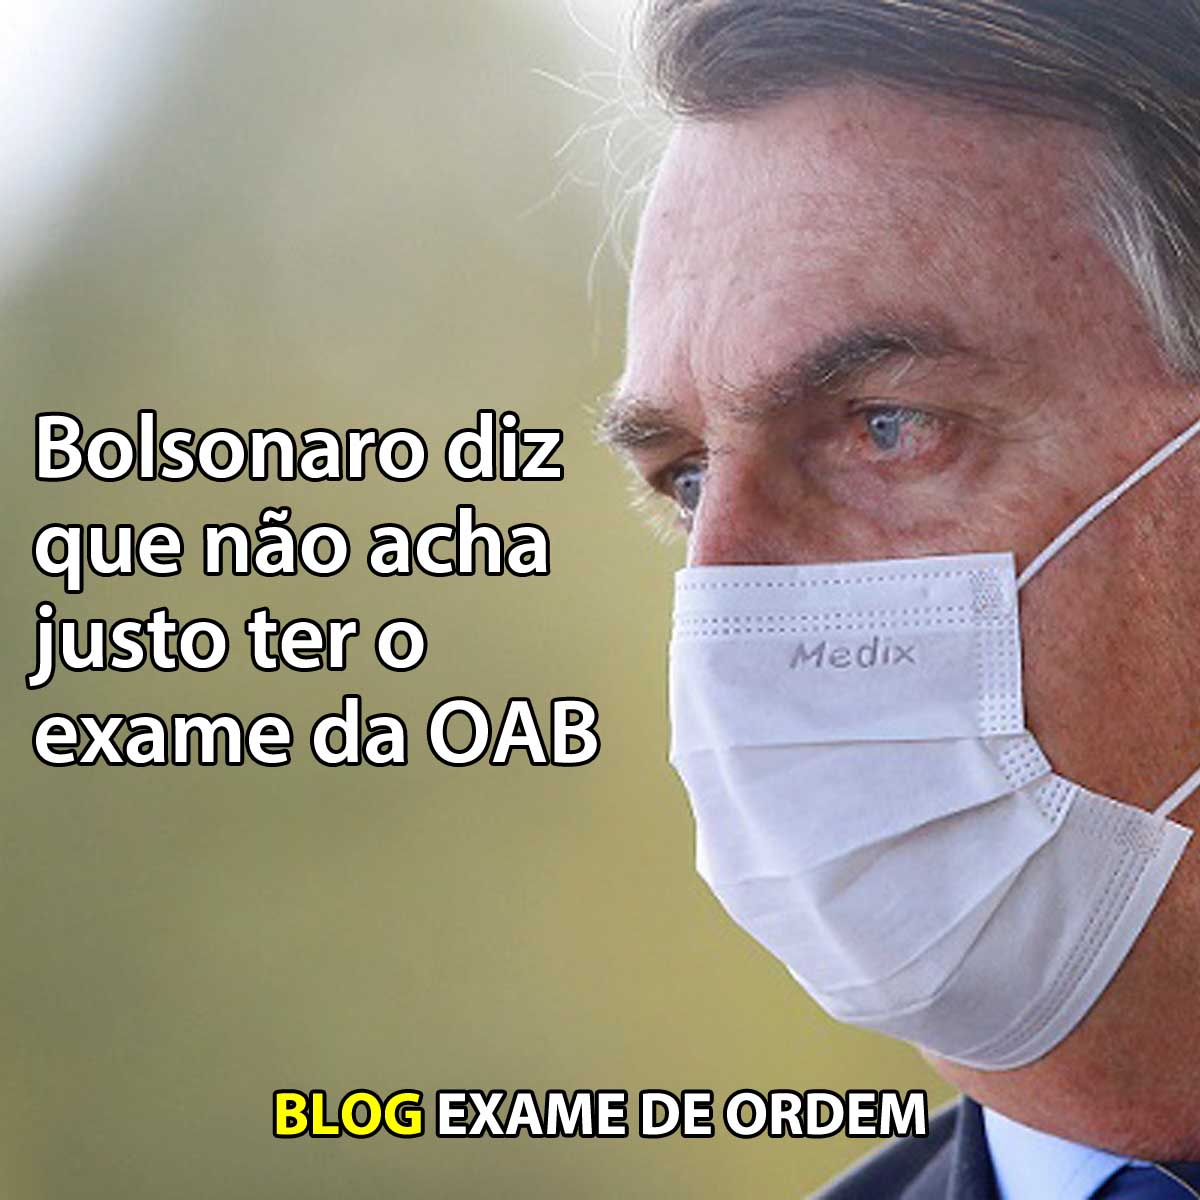 Bolsonaro diz que não acha justo ter o exame da OAB